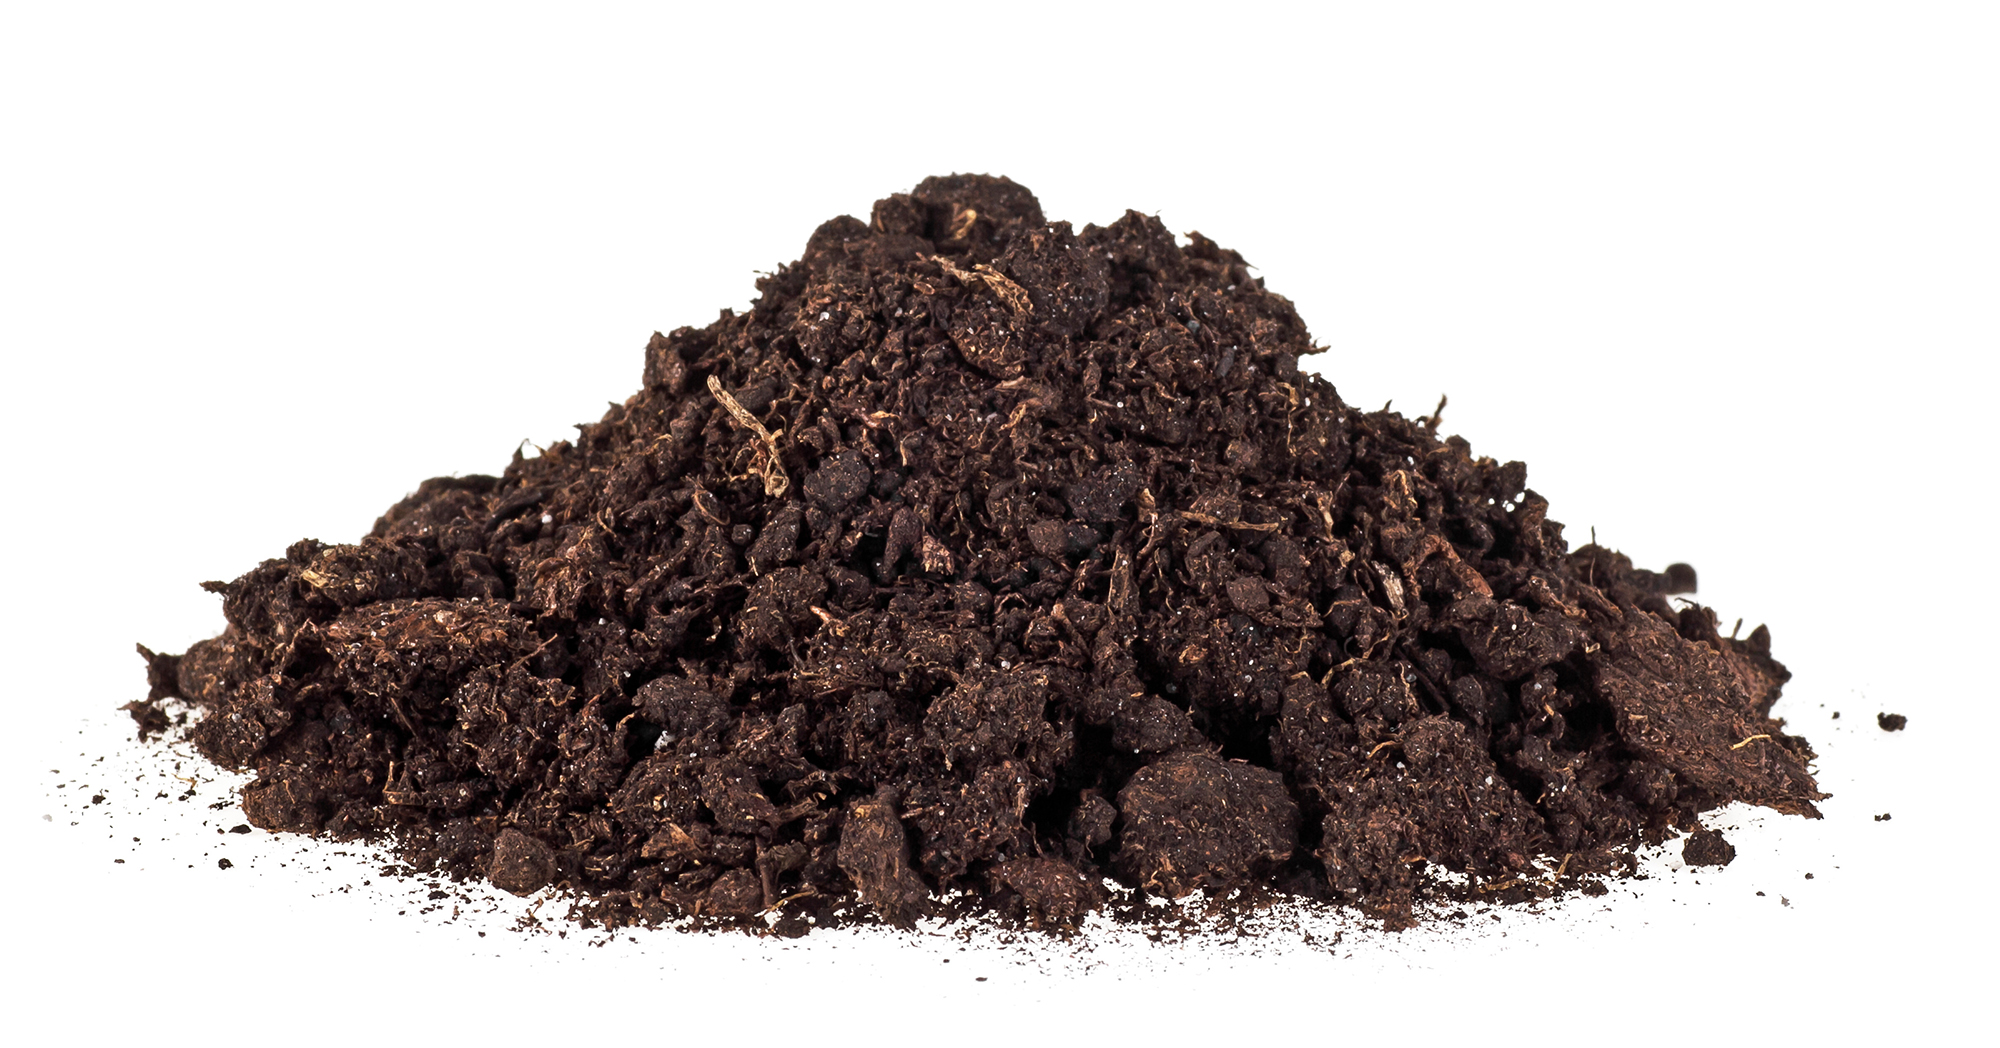 Pile of screened soil